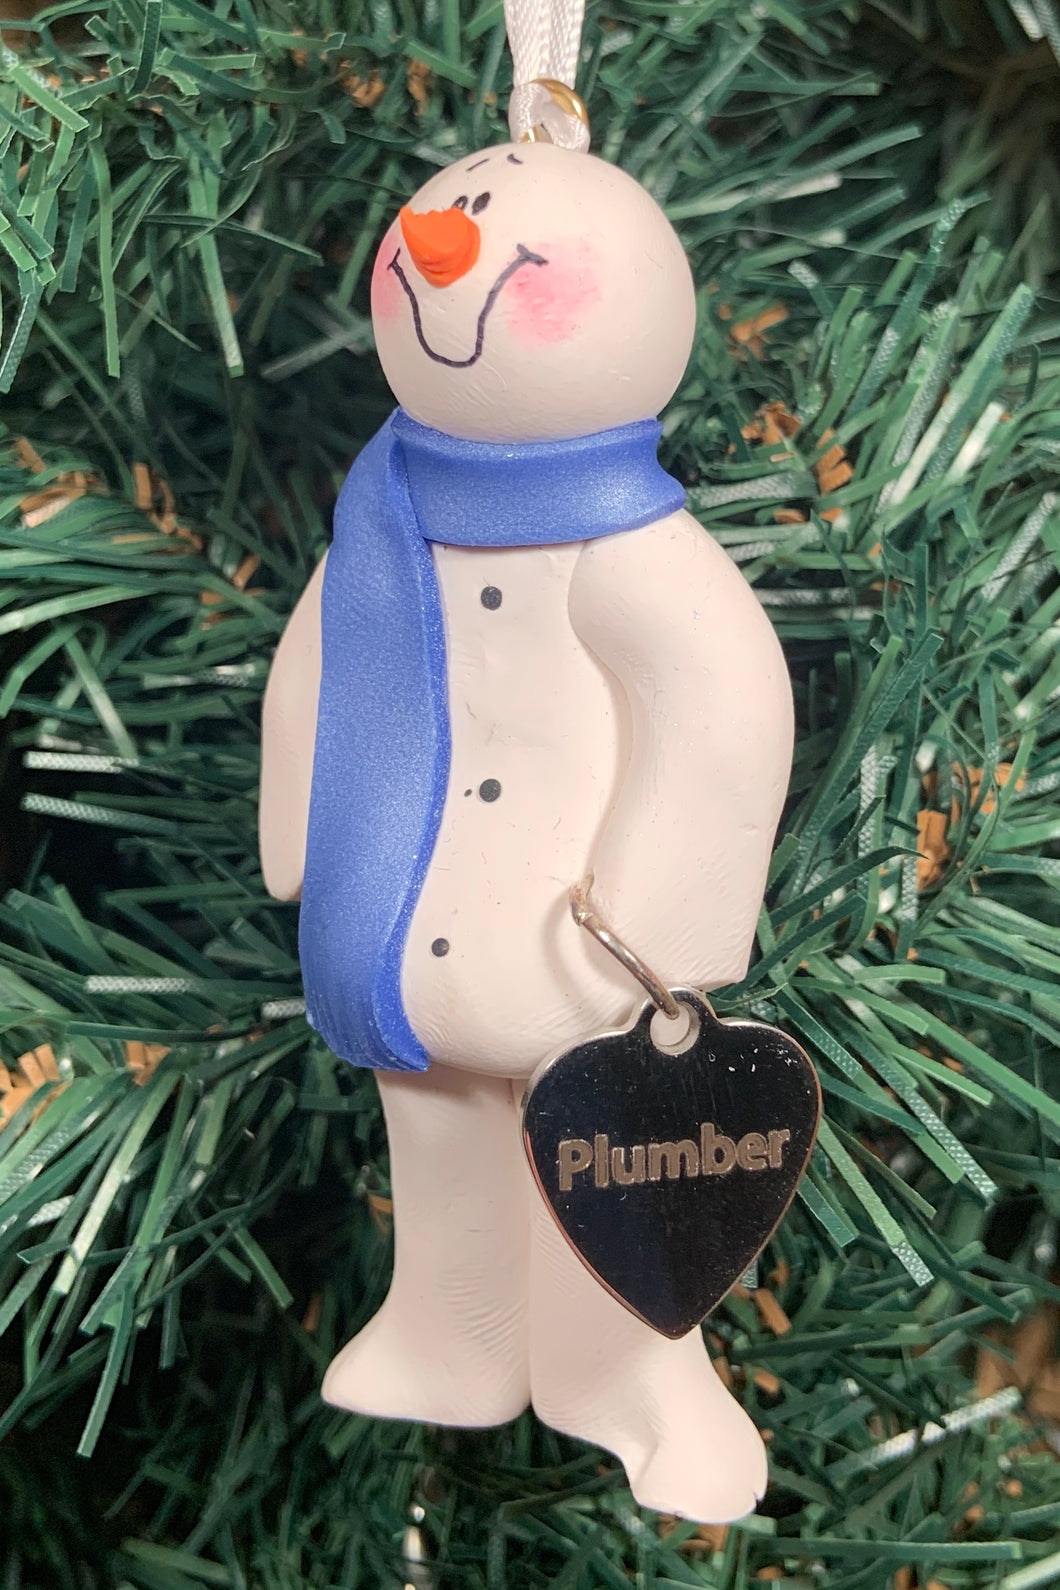 Plumber Snowman Tree Ornament